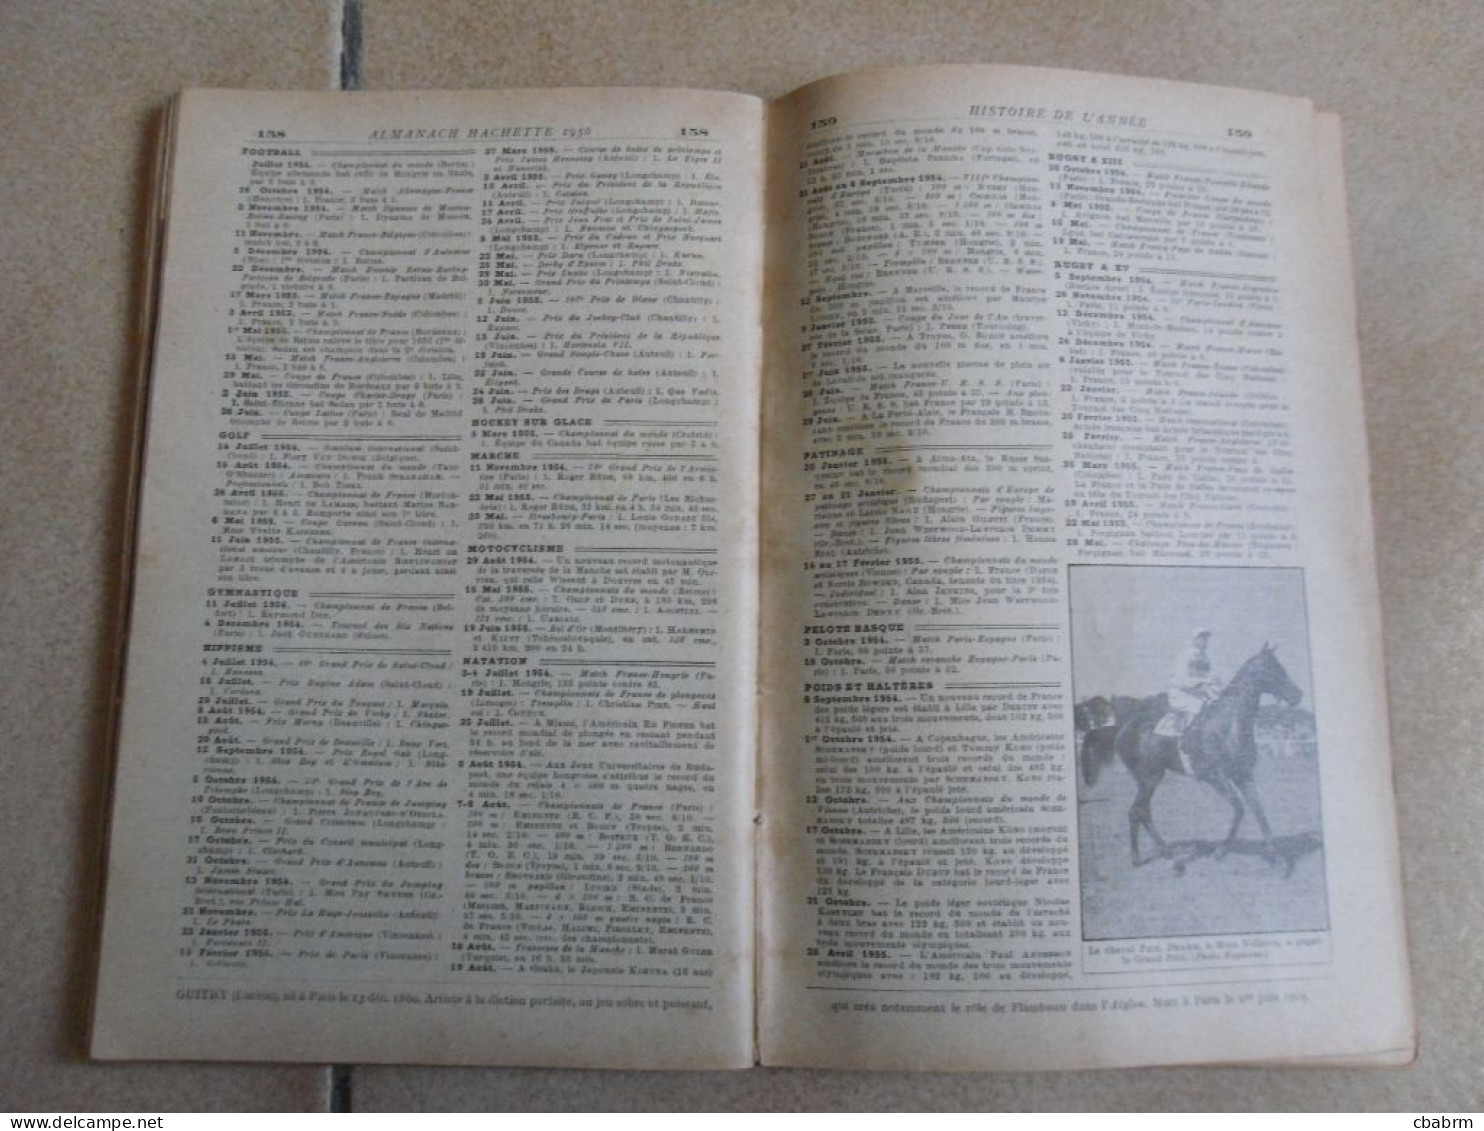 ALMANACH HACHETTE 1956 - petite encyclopedie populaire de la vie pratique